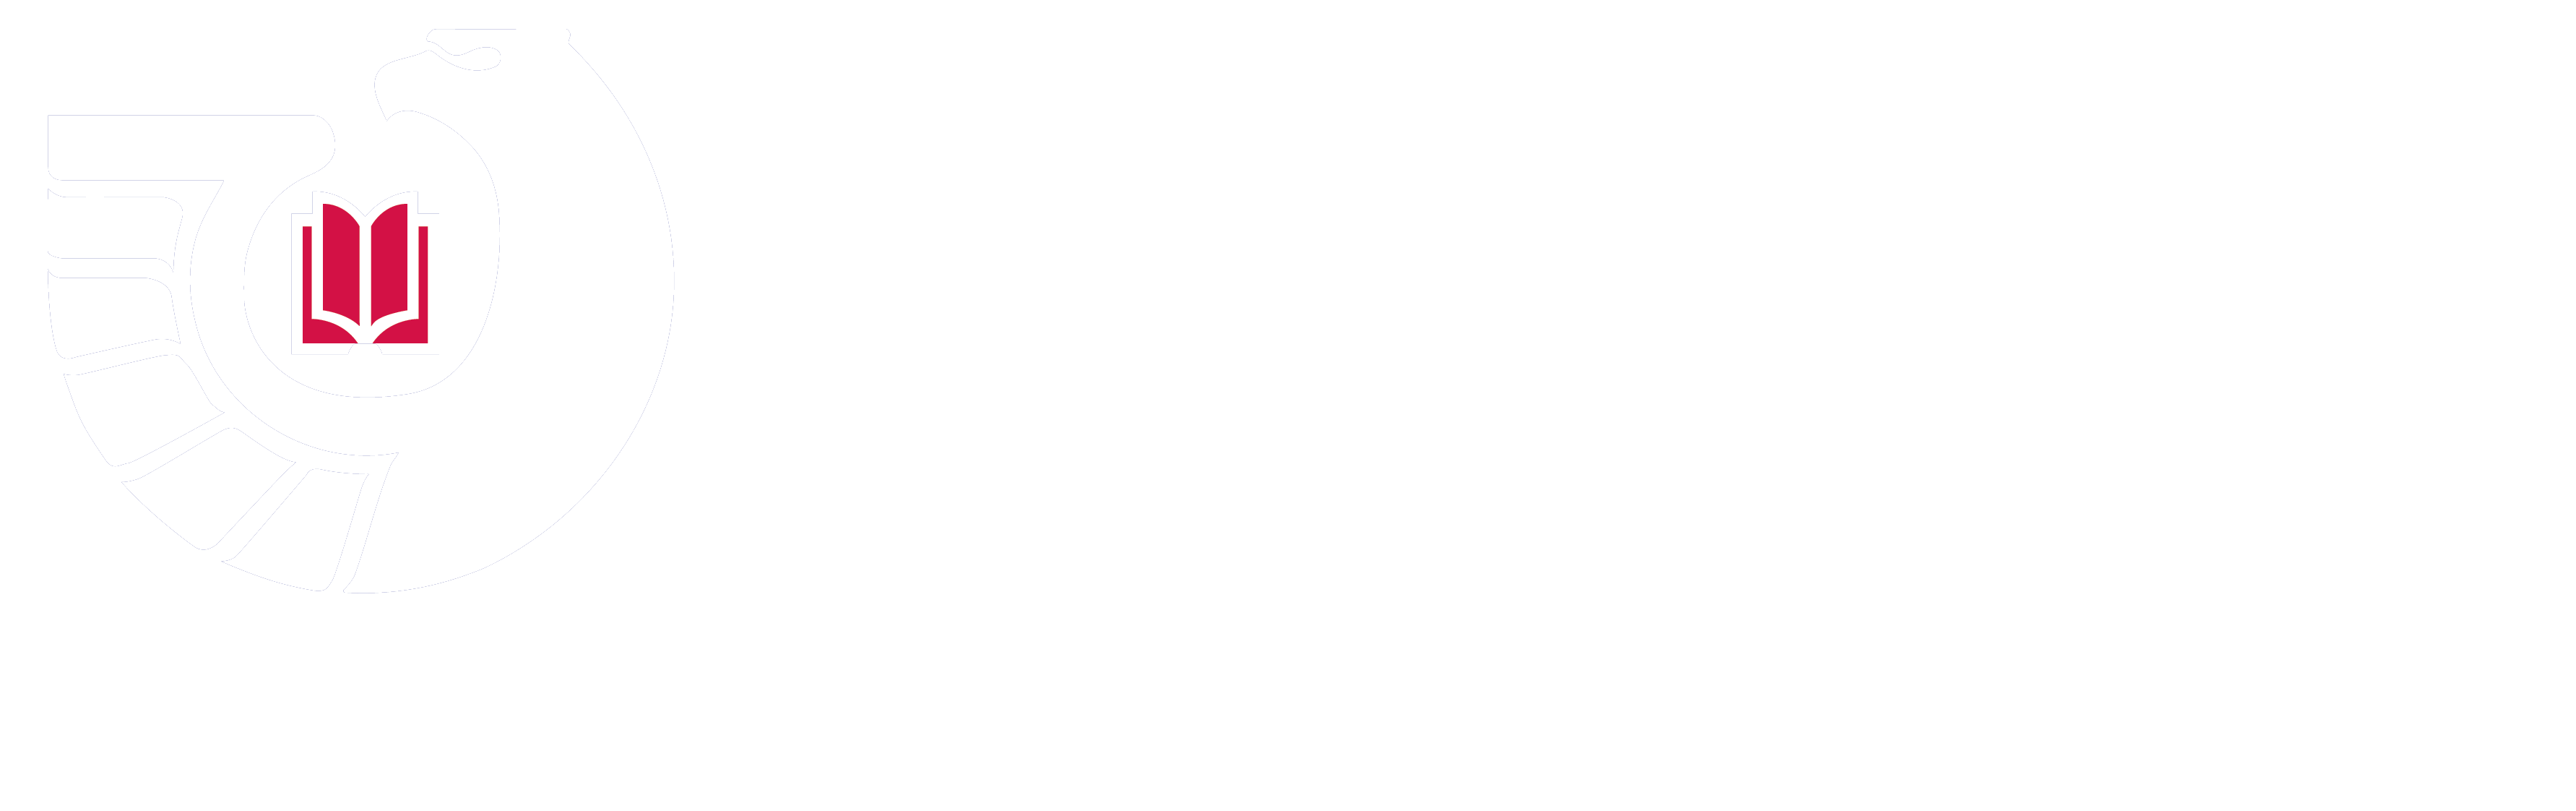 联邦图书馆托存计划标志